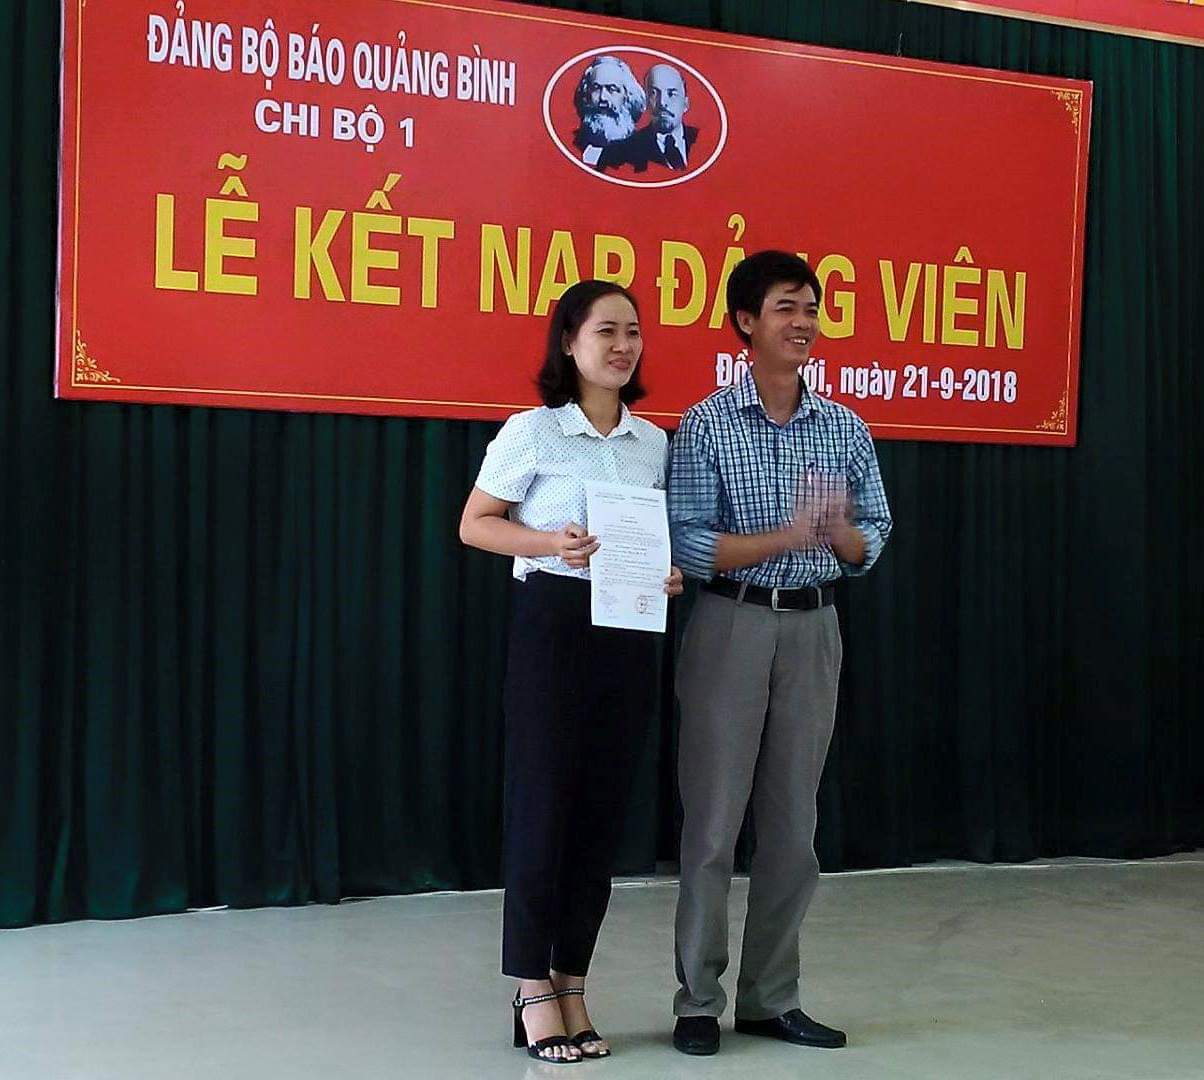 Đảng bộ Báo Quảng Bình là một trong những tổ chức cơ sở đảng làm tốt công tác phát triển đảng viên.